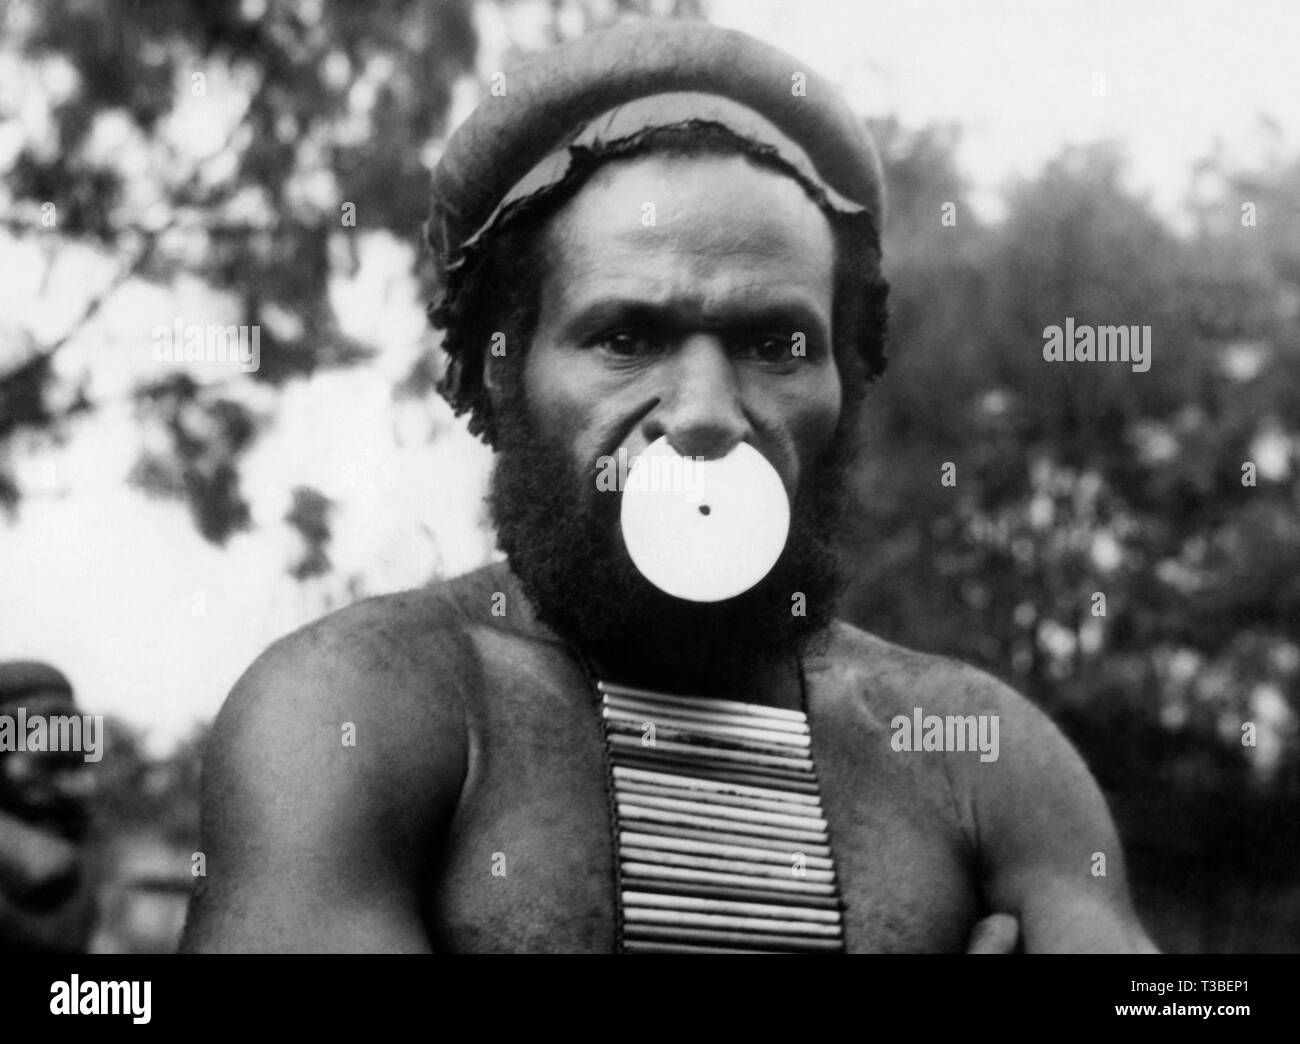 Guinée, le shell dans le nez et des bâtons sur la poitrine donner de l'autorité de l'utilisateur, 1952 Banque D'Images